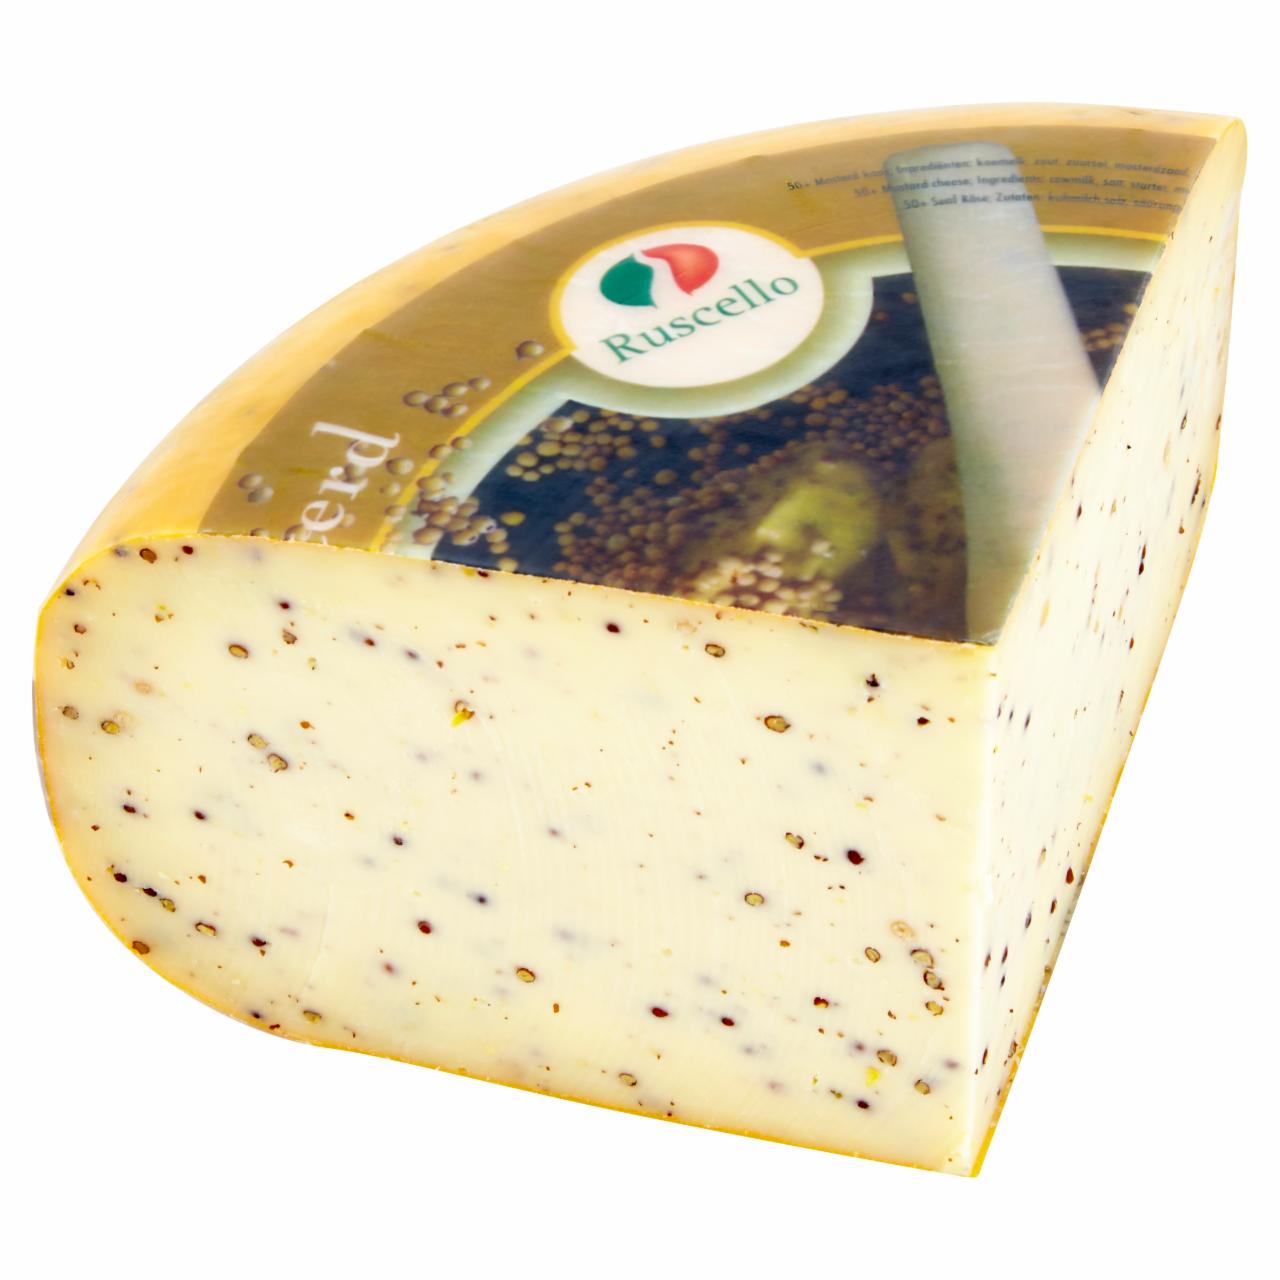 Képek - Ruscello mustáros holland félkemény zsíros sajt